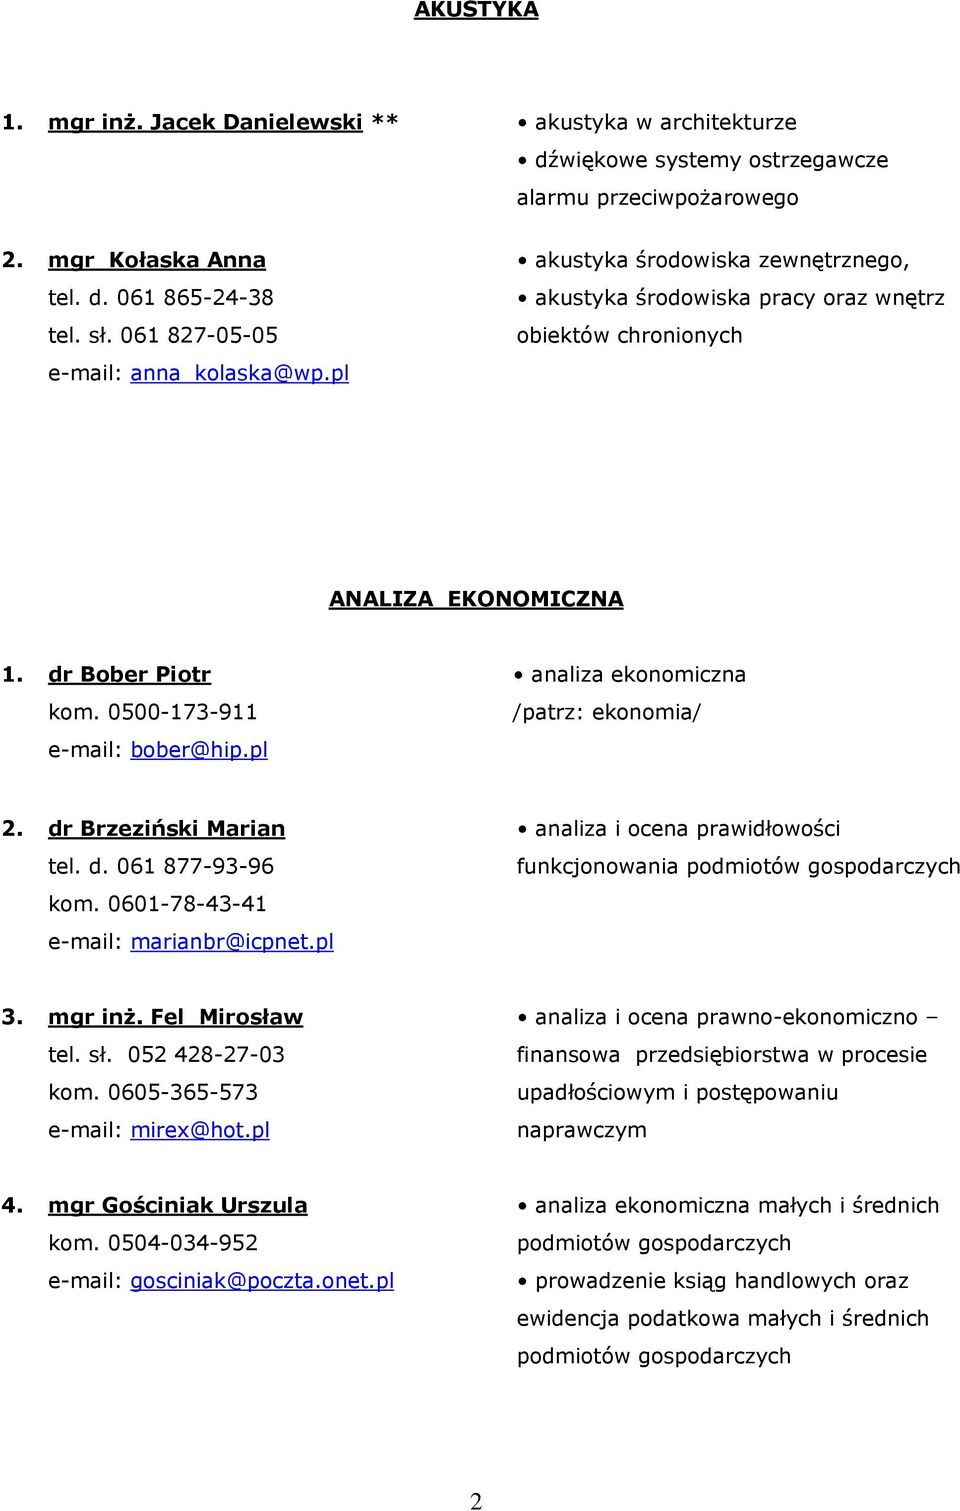 0500-173-911 e-mail: bober@hip.pl analiza ekonomiczna /patrz: ekonomia/ 2. dr Brzeziński Marian tel. d. 061 877-93-96 kom. 0601-78-43-41 e-mail: marianbr@icpnet.